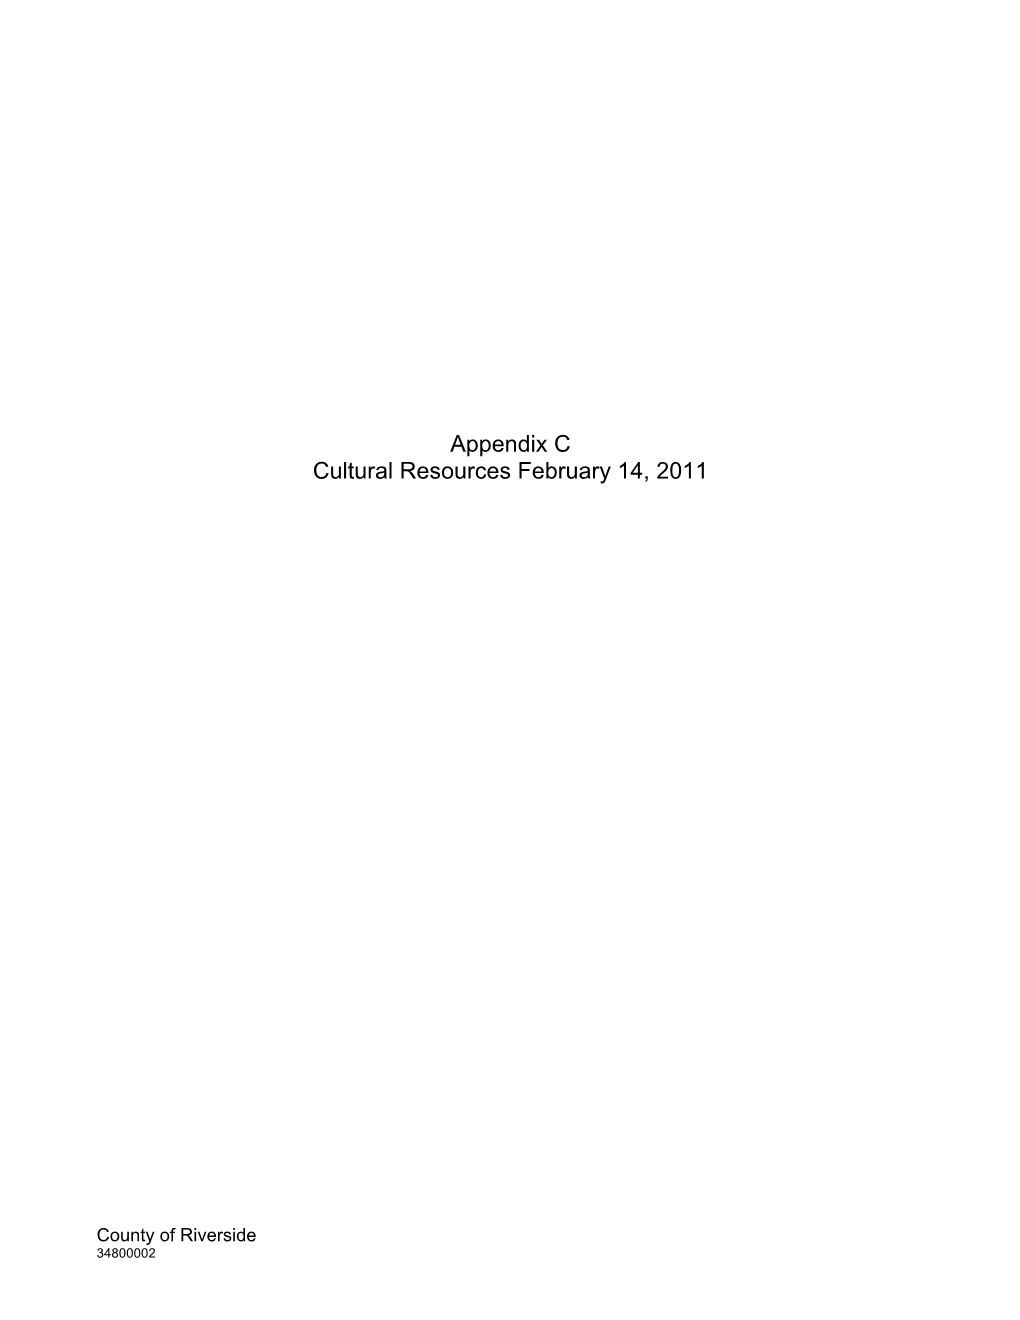 Appendix C Cultural Resources February 14, 2011